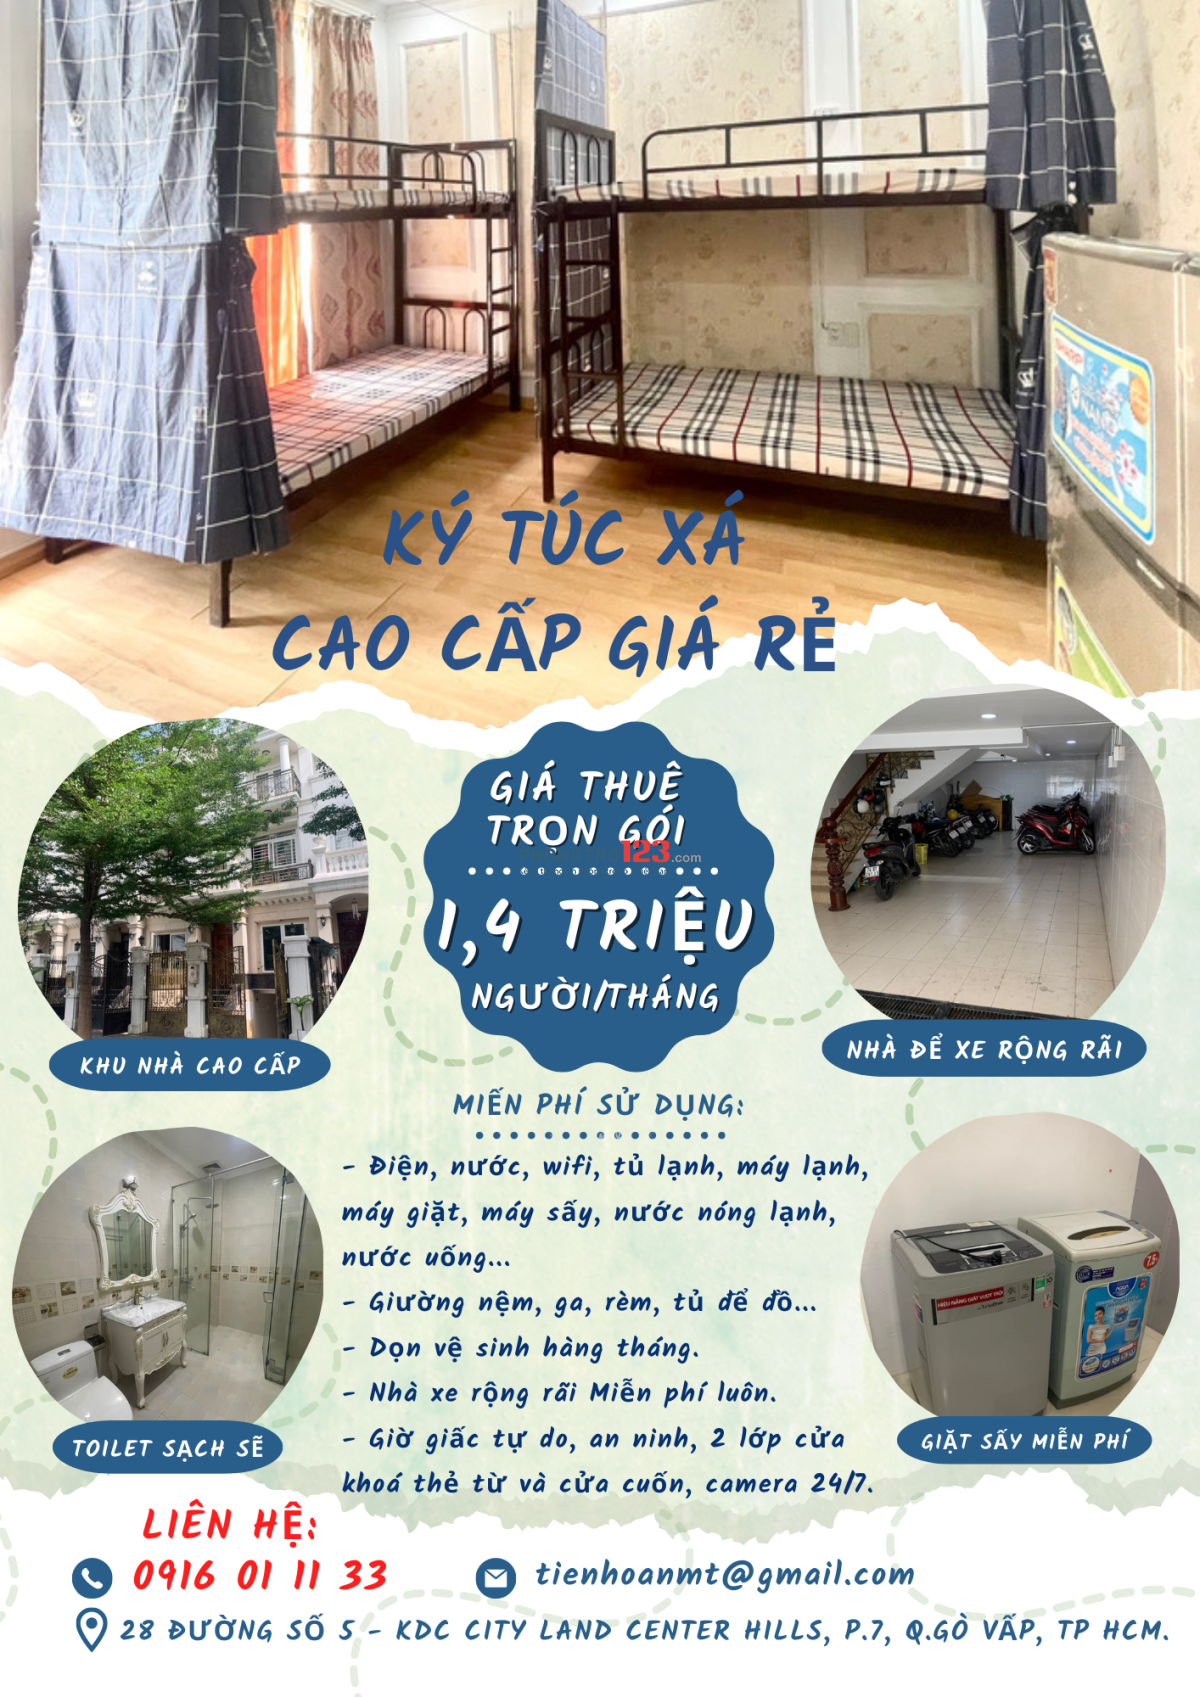 Cho thuê KÝ TÚC XÁ cao cấp giá rẻ - 1,4triệu - gần Nguyễn Thái Sơn, Gò Vấp - giờ tự do